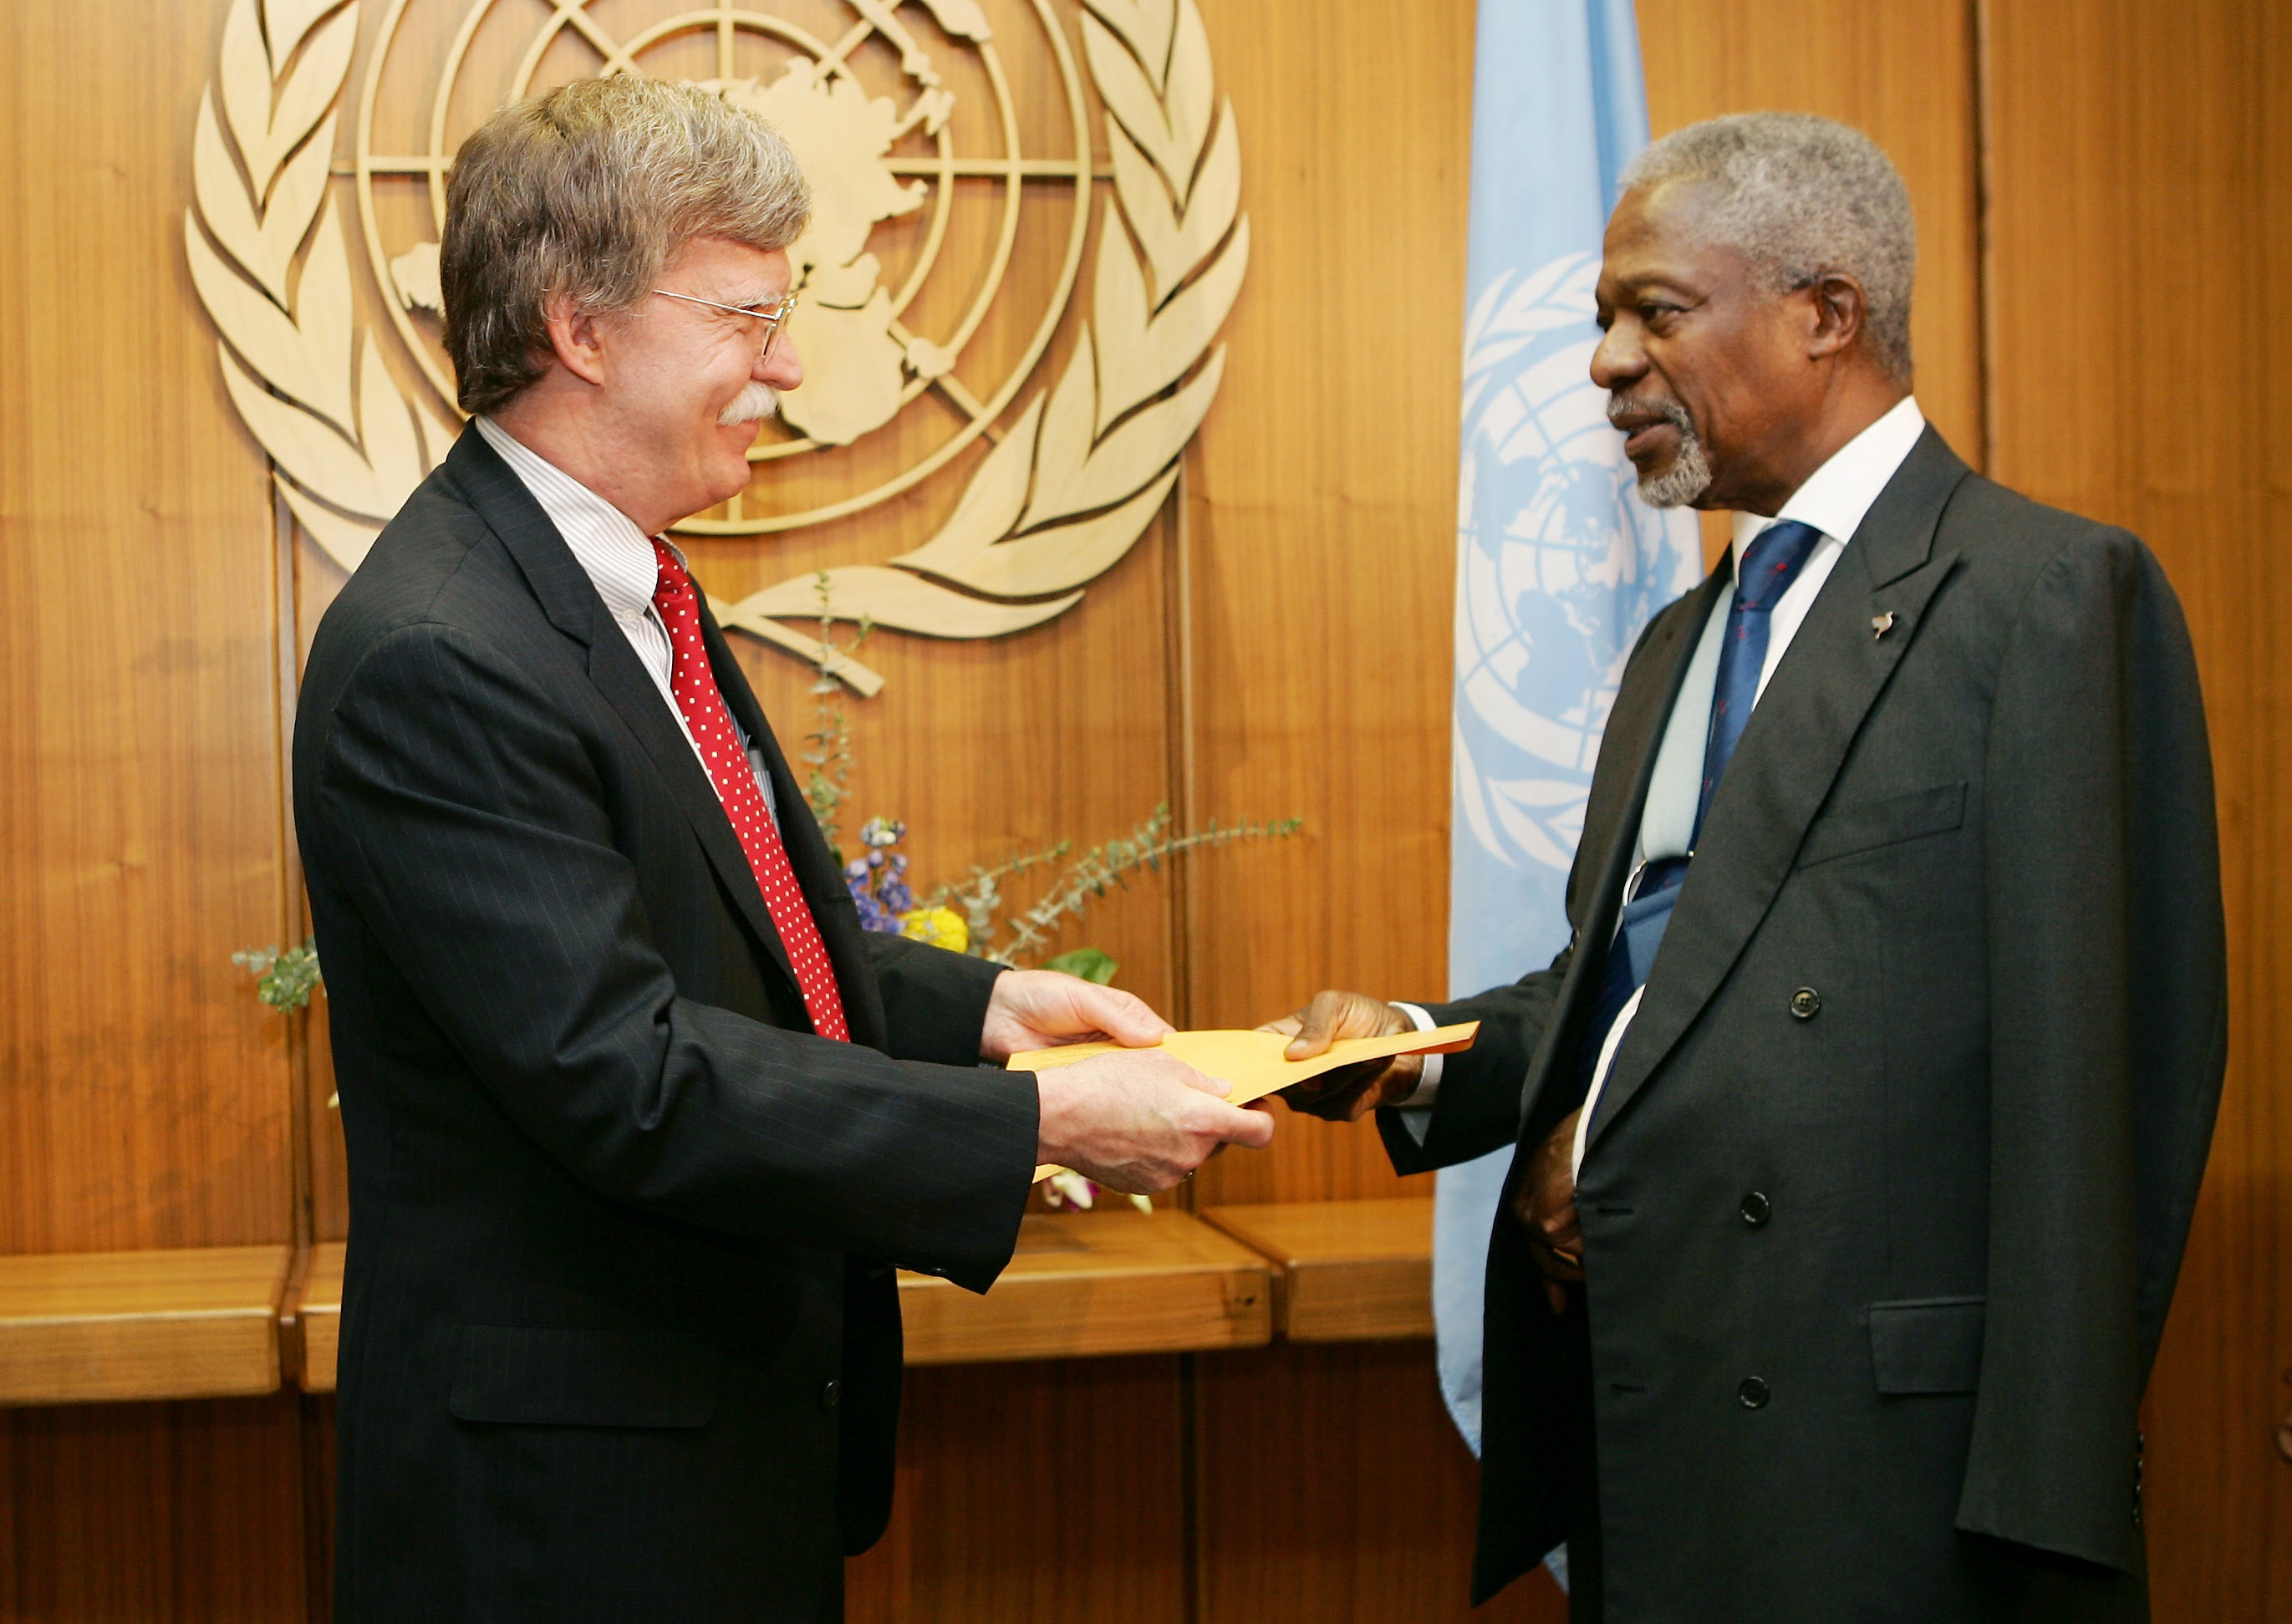 
السفير الأمريكي  لدى الأمم المتحدة -آنذاك- يقدم أوراق اعتماد للأمين العام للأمم المتحدة كوفي عنان في نيويورك 2005 (رويترز)
